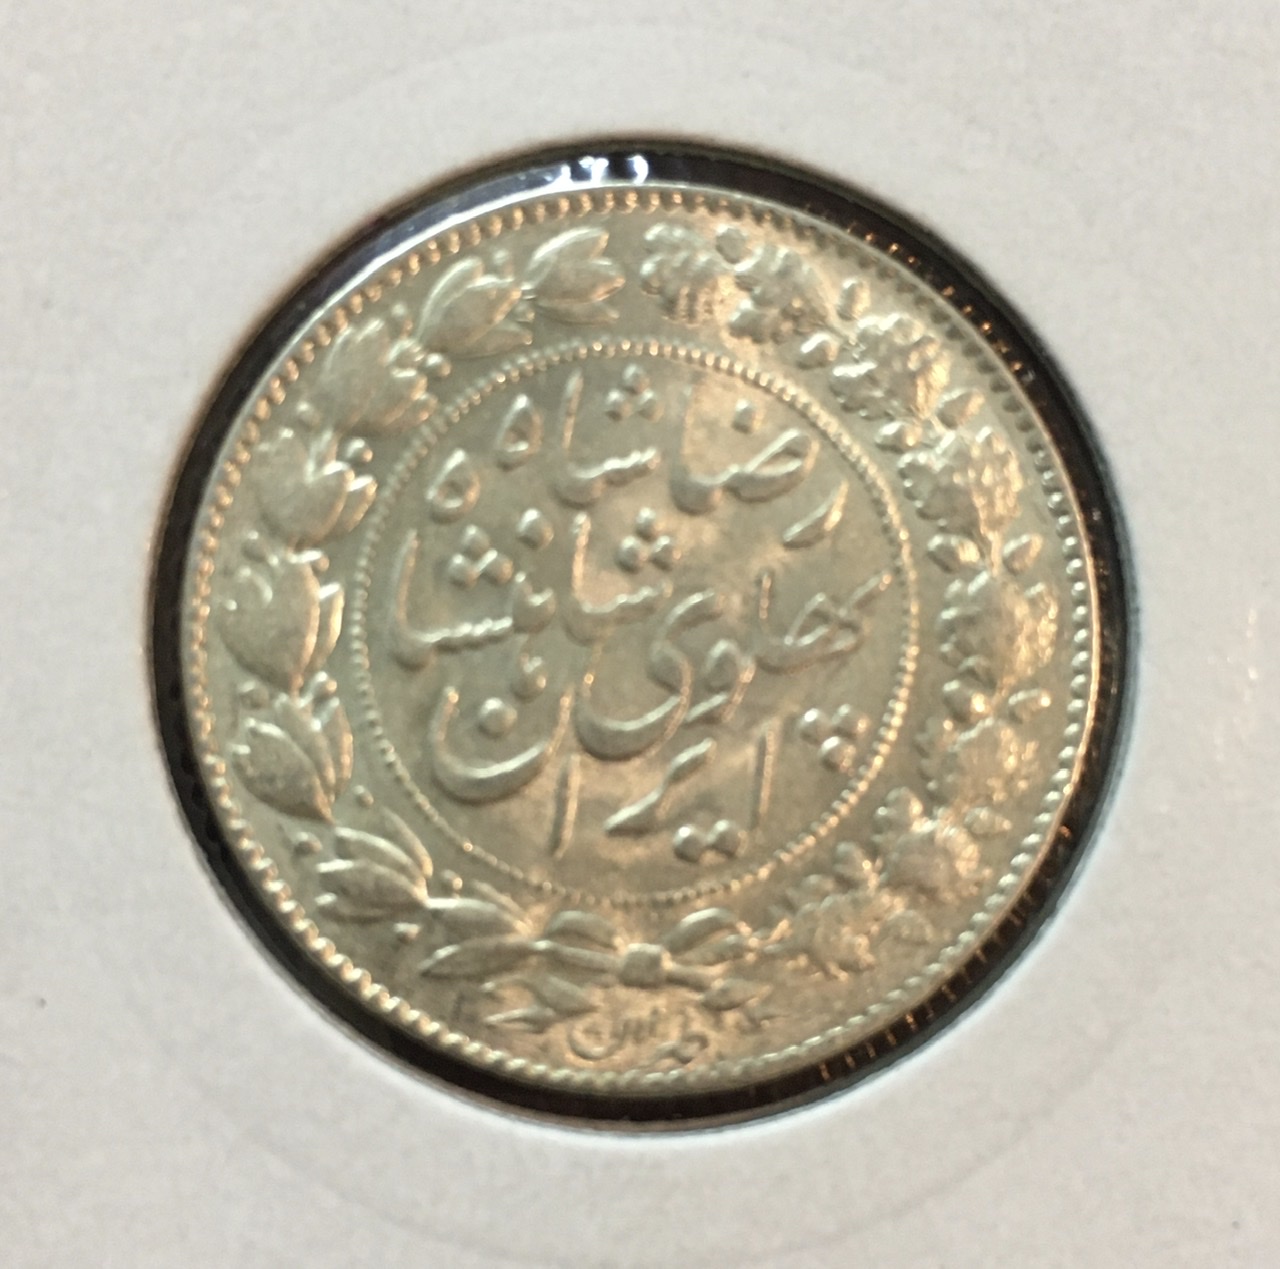 سکه نقره دوهزار دینار عنوان ١٣٠۵ رضا شاه ms63 بسیار کمیاب